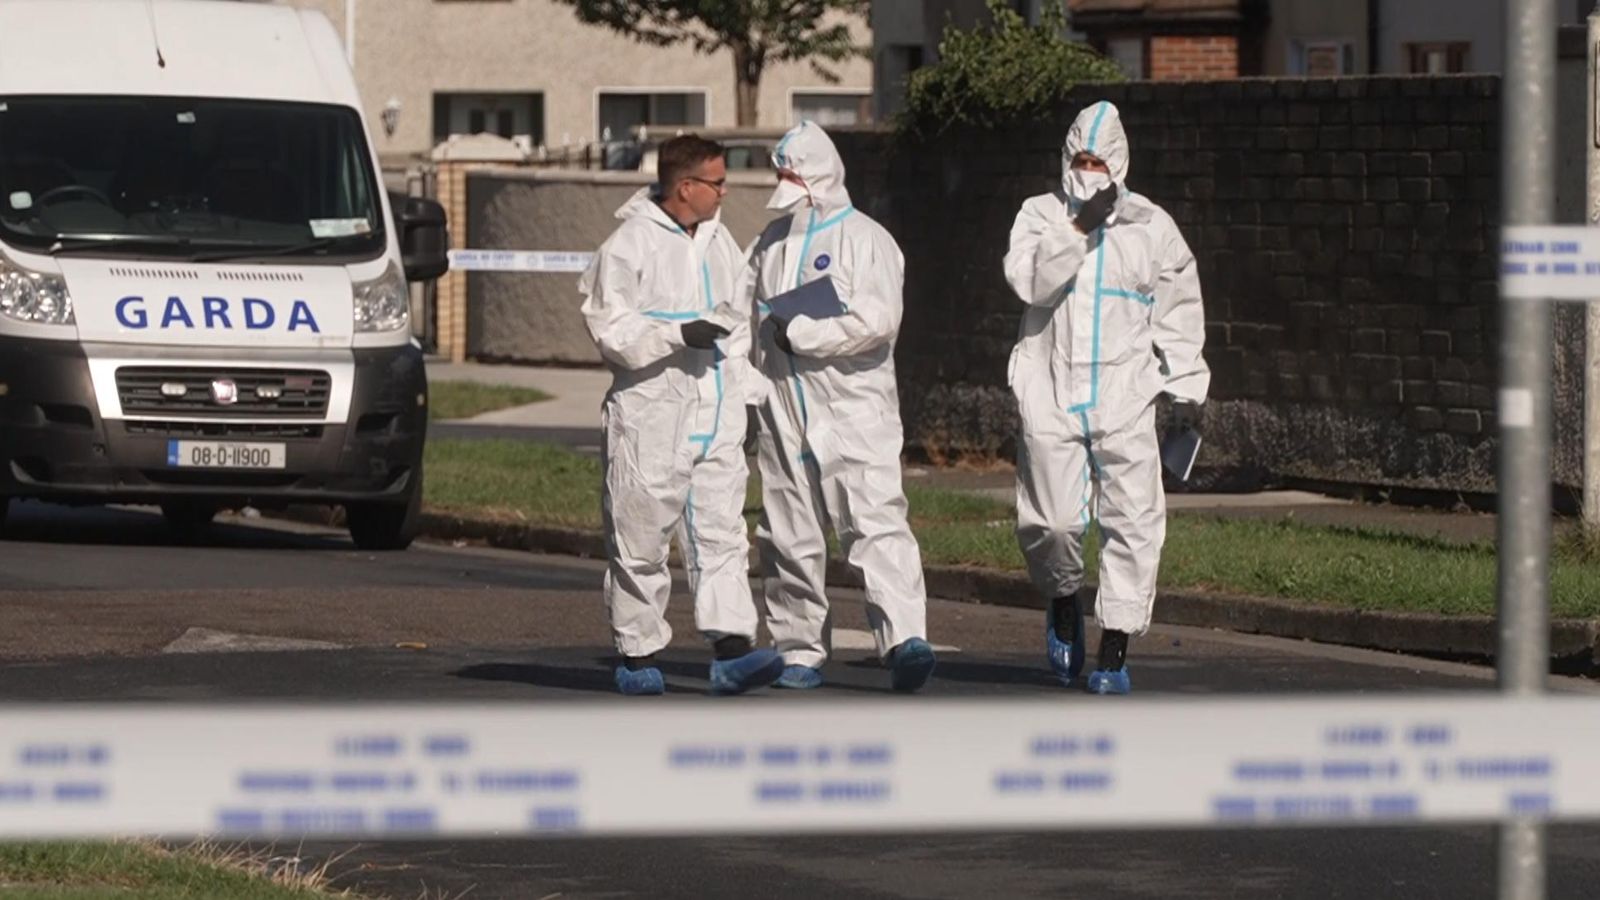 مقتل عميد وطفلين في “حادث عنيف” في دبلن |  اخبار العالم